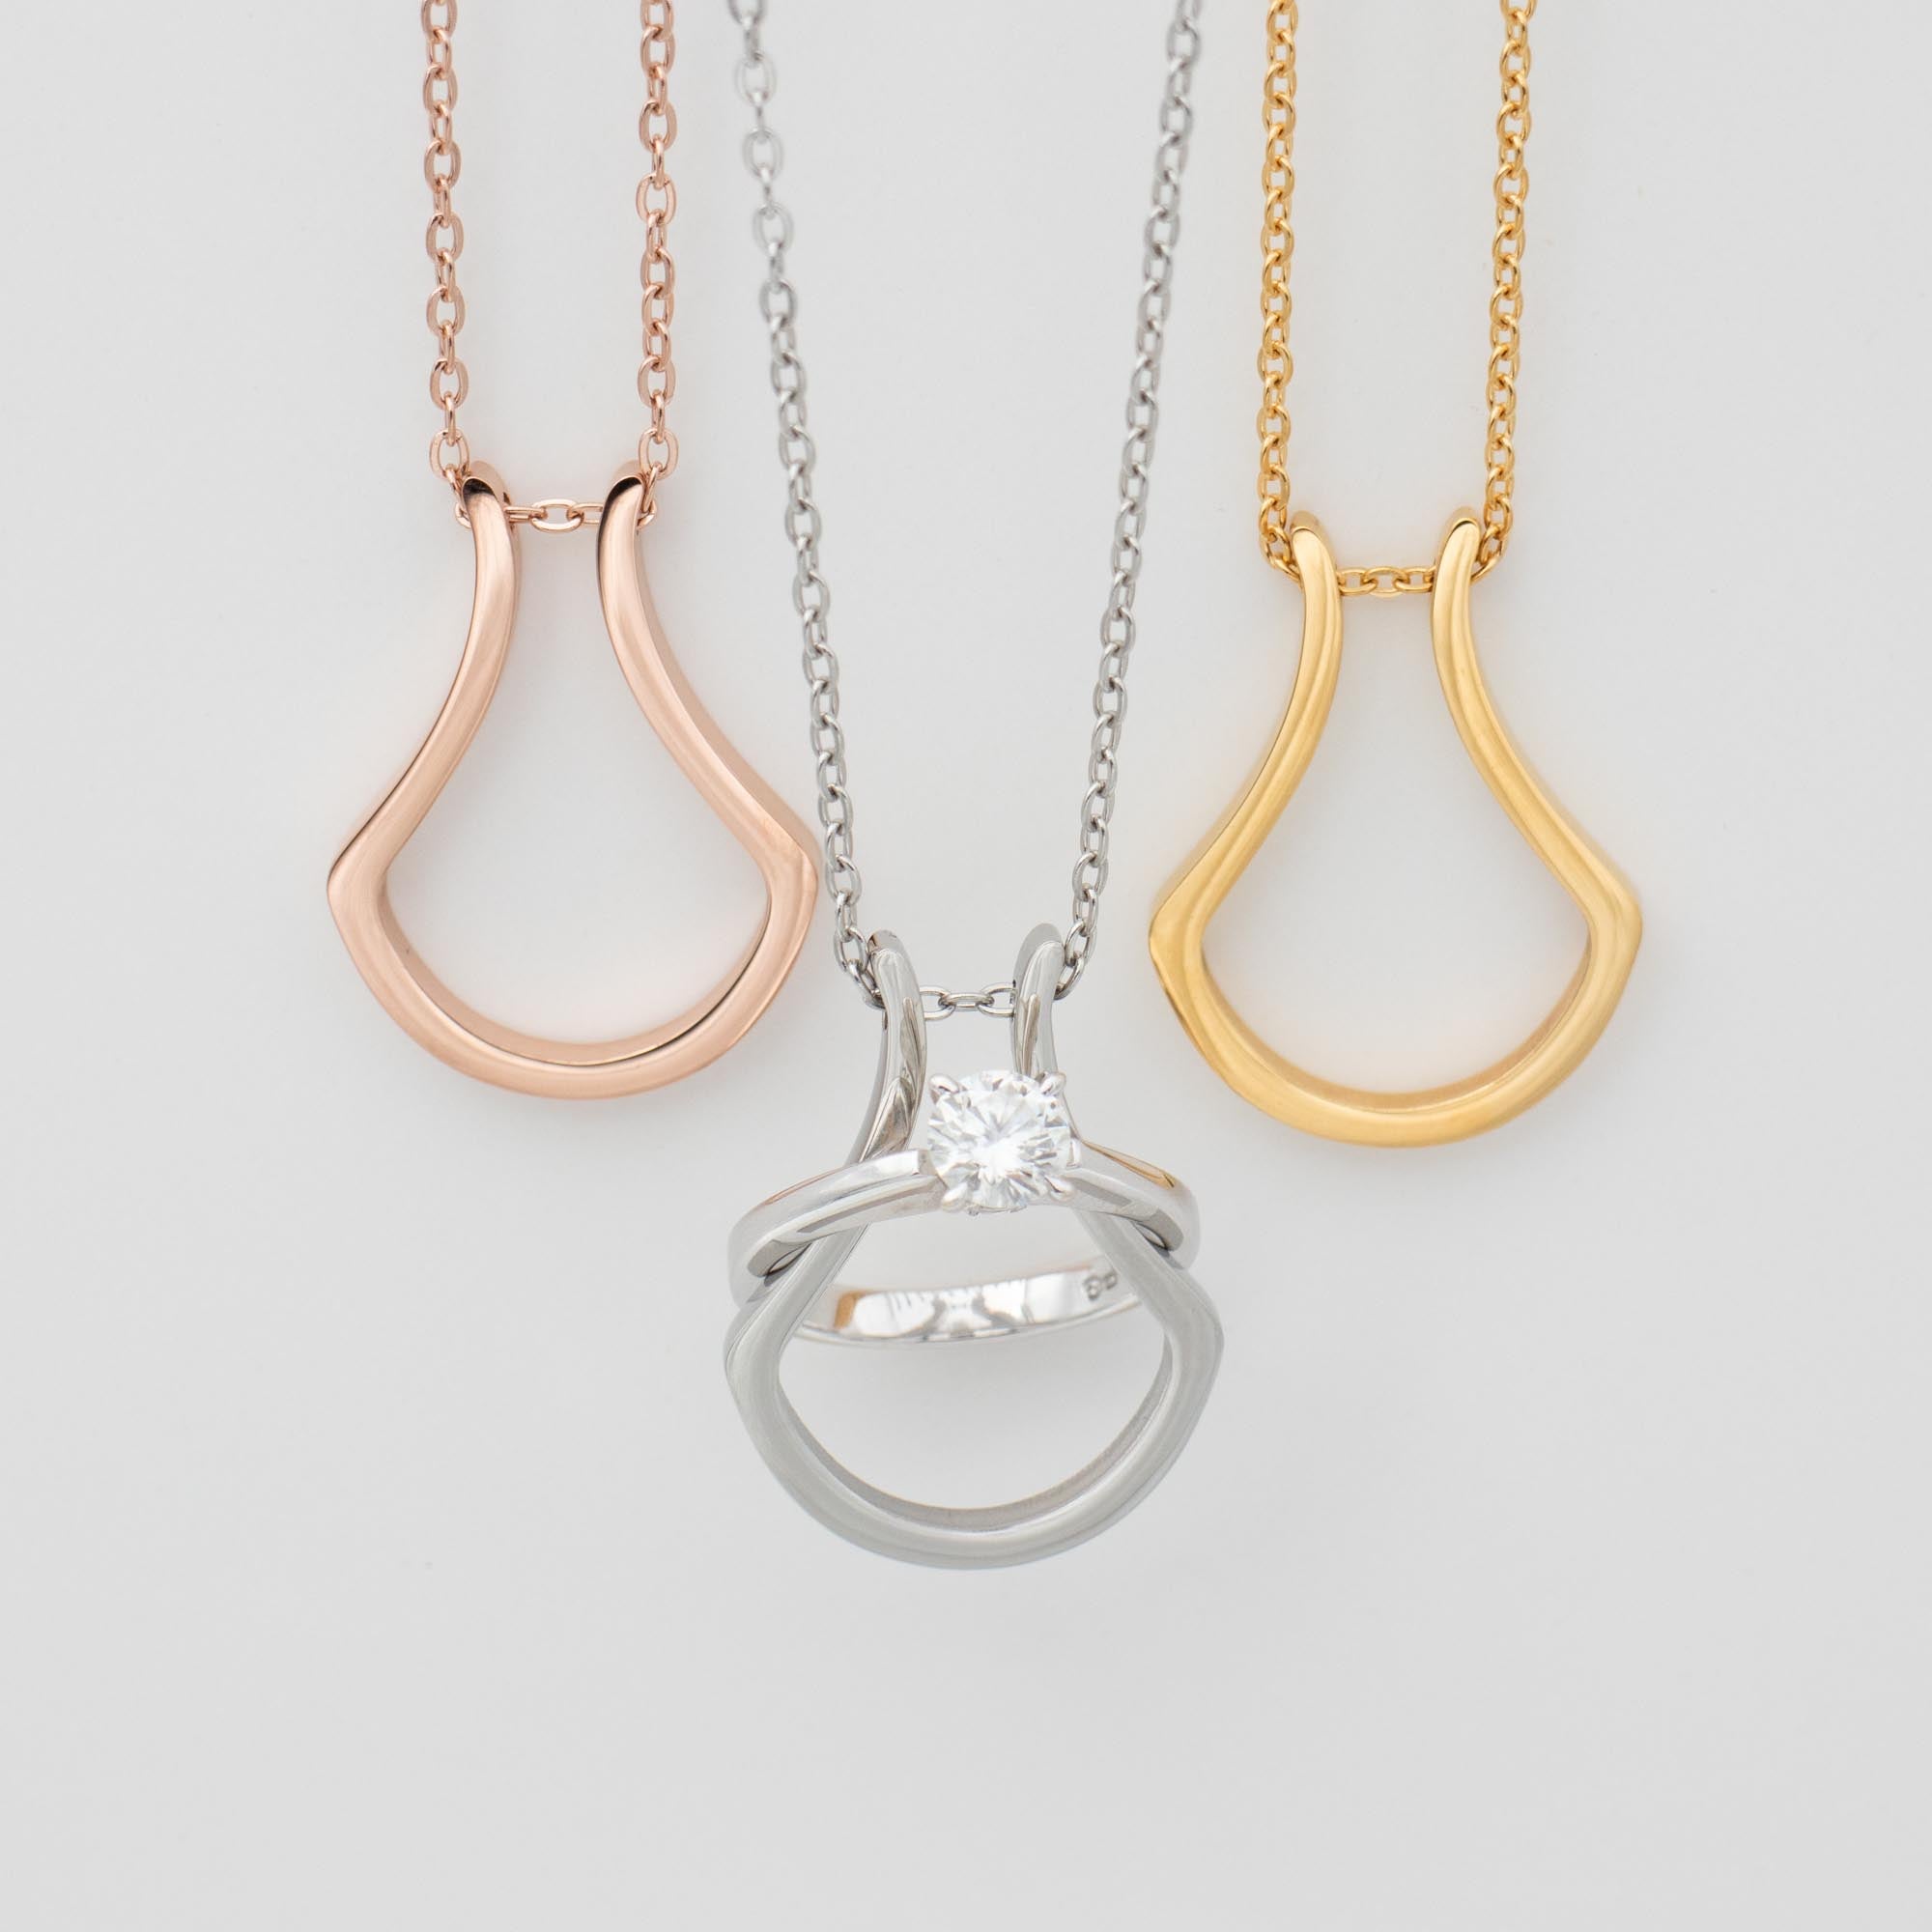 Horseshoe ring holder necklaces | Fruugo UK